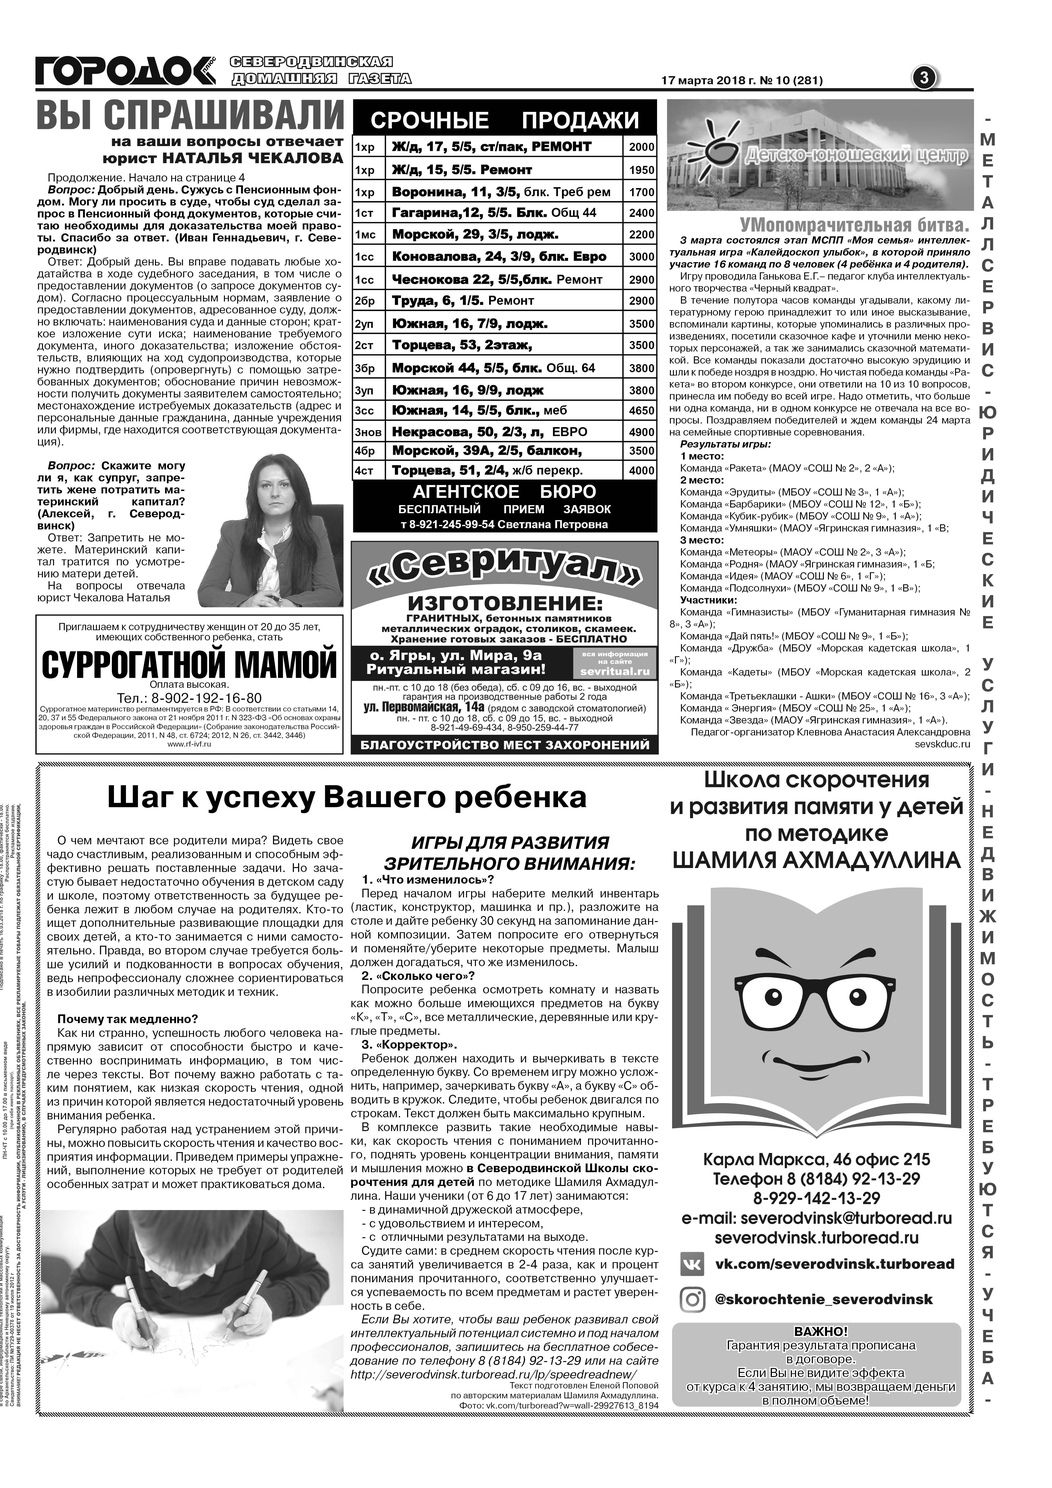 Городок плюс, выпуск номер 10 от 17 марта 2018 года, страница 3.